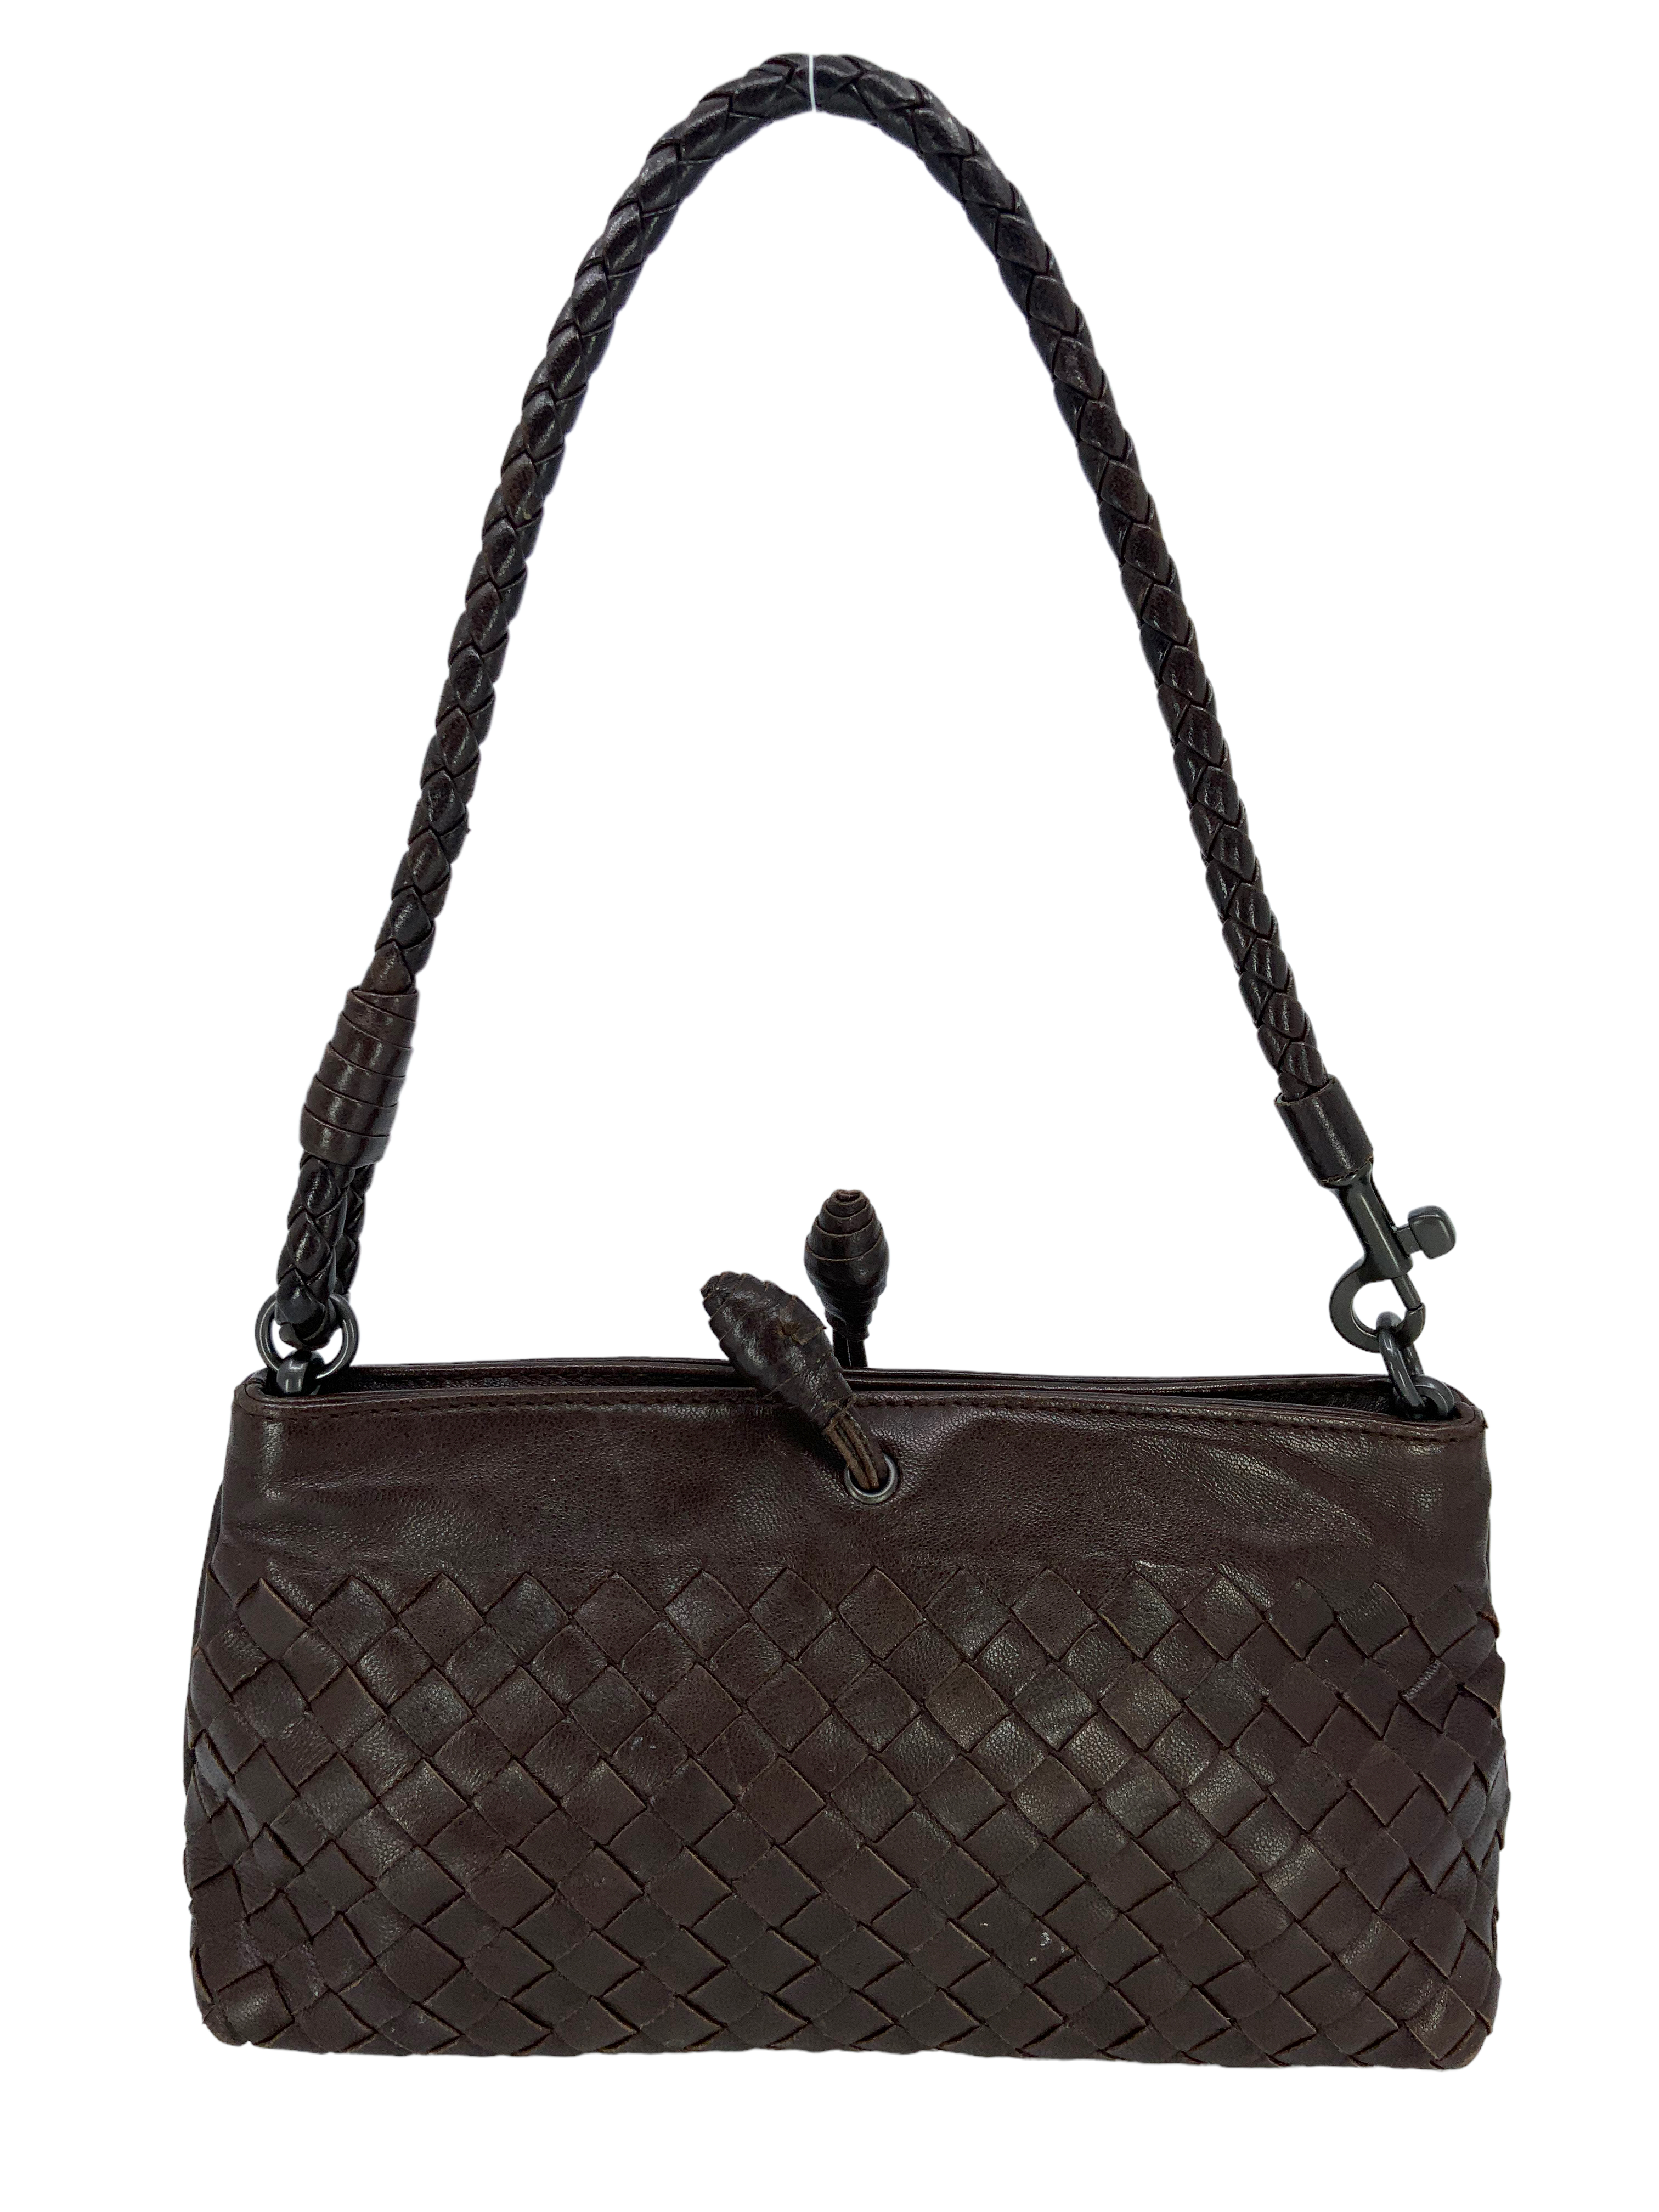 Intrecciato Leather Shoulder Bag in Brown - Bottega Veneta